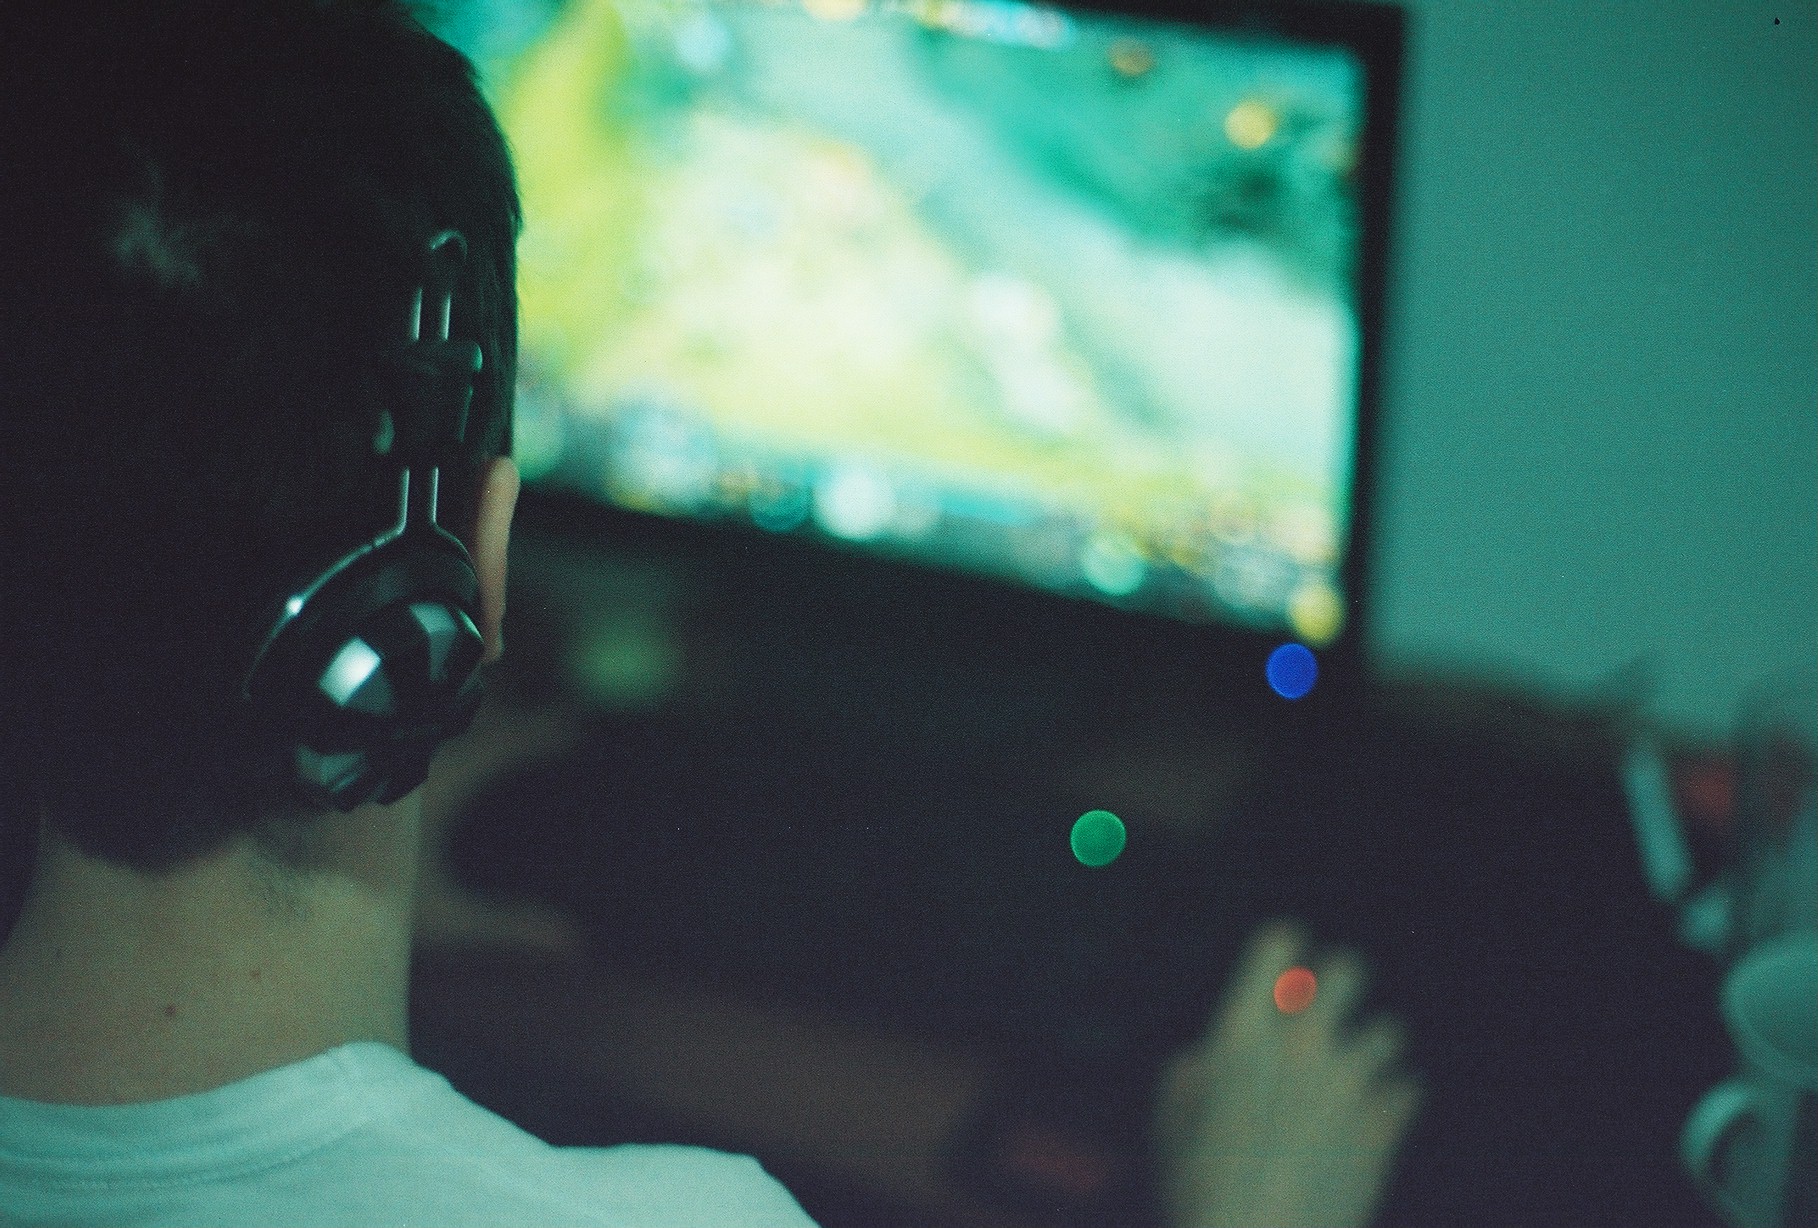 La UOC aposta pels videojocs com a eina d'aprenentatge.<br />Foto: Pawel Kadysz / Flickr (CC)